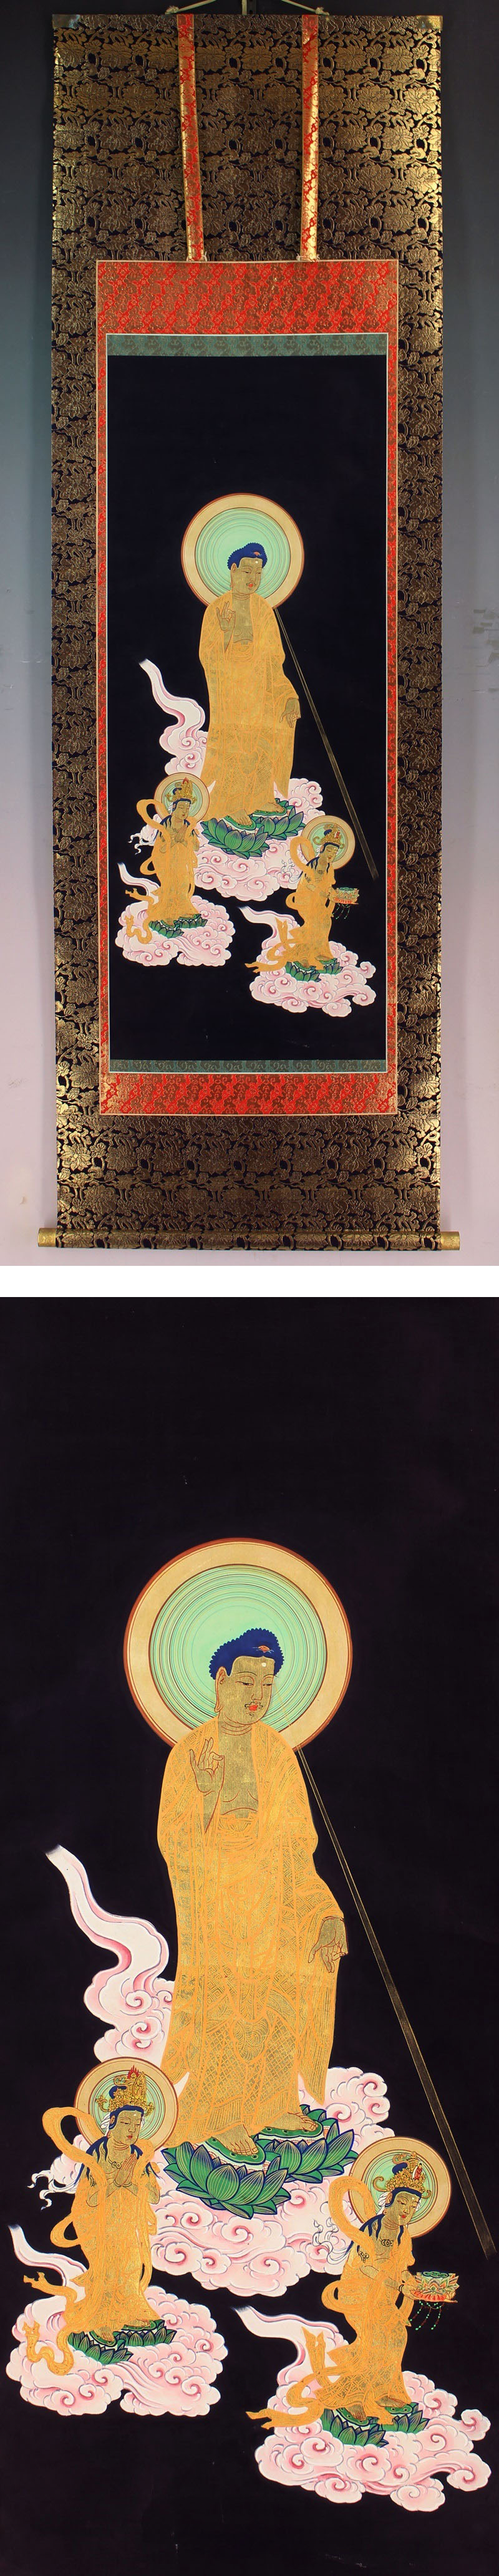 直営通販仏画◆絹本◆合箱◆掛軸 x11124 人物、菩薩